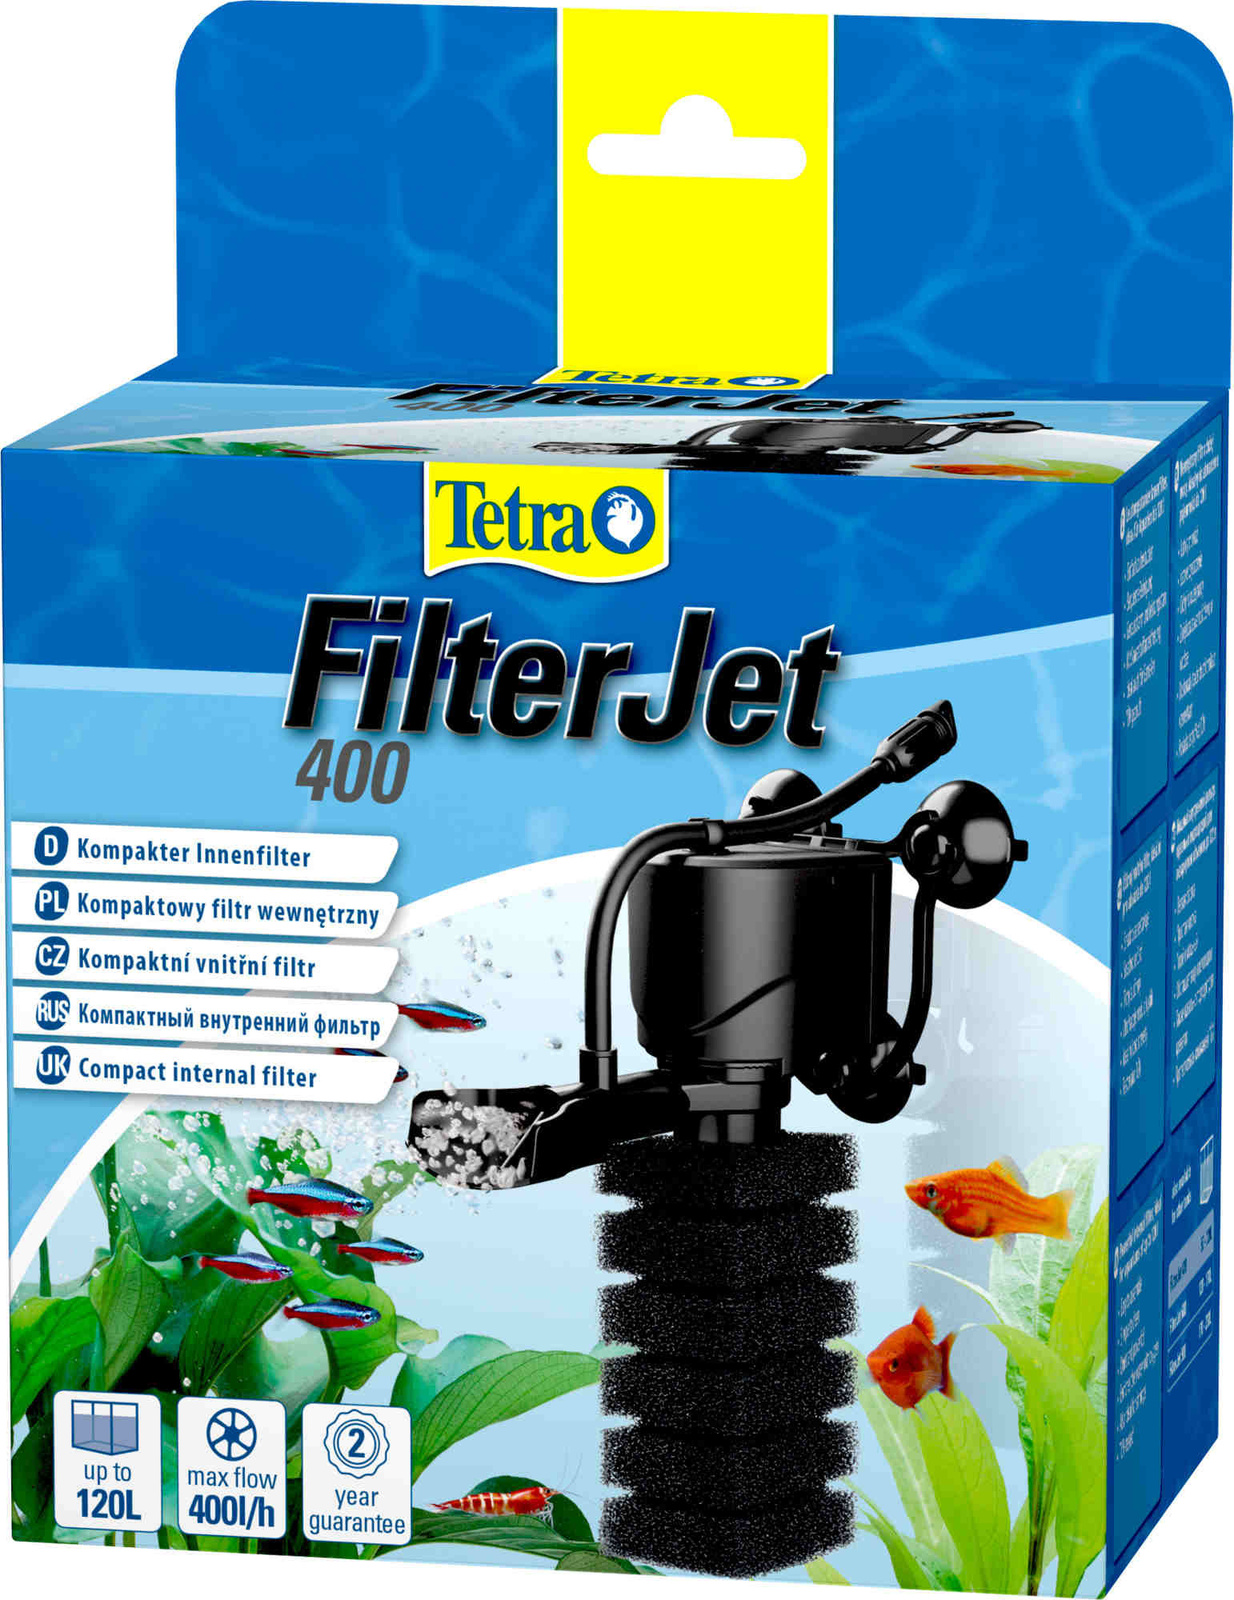 Tetra (оборудование) Tetra (оборудование) внутренний фильтр FilterJet 400, для аквариумов 50 – 120л (460 г) набор запчастей tetra filterjet sparepart set